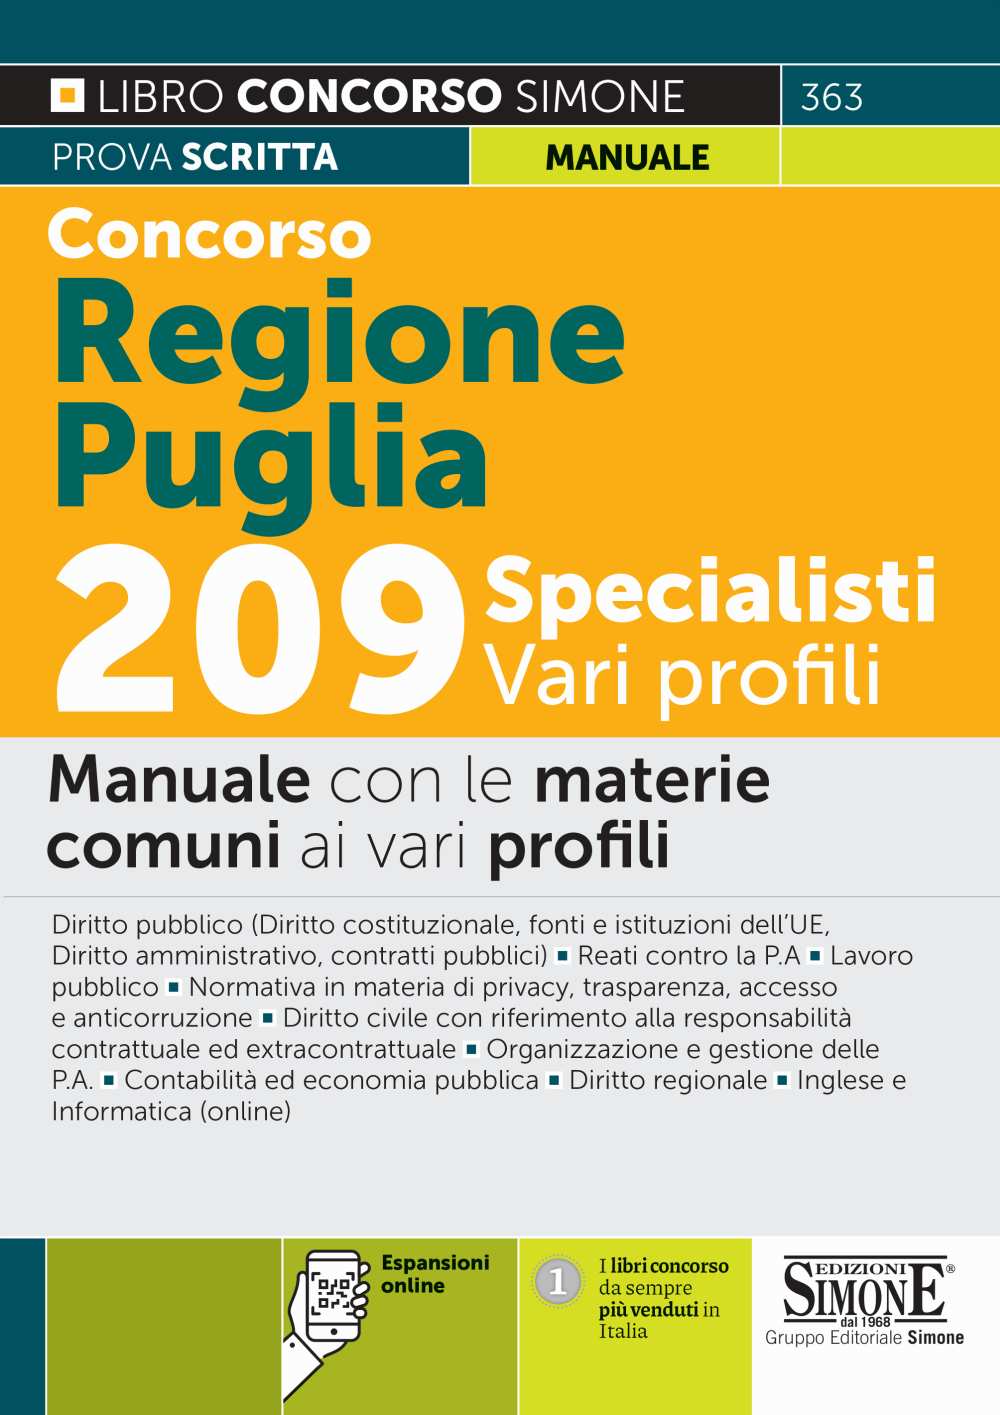 Concorso Regione Puglia 209 Specialisti - Vari Profili - Manuale con le materie comuni ai vari profili - 363